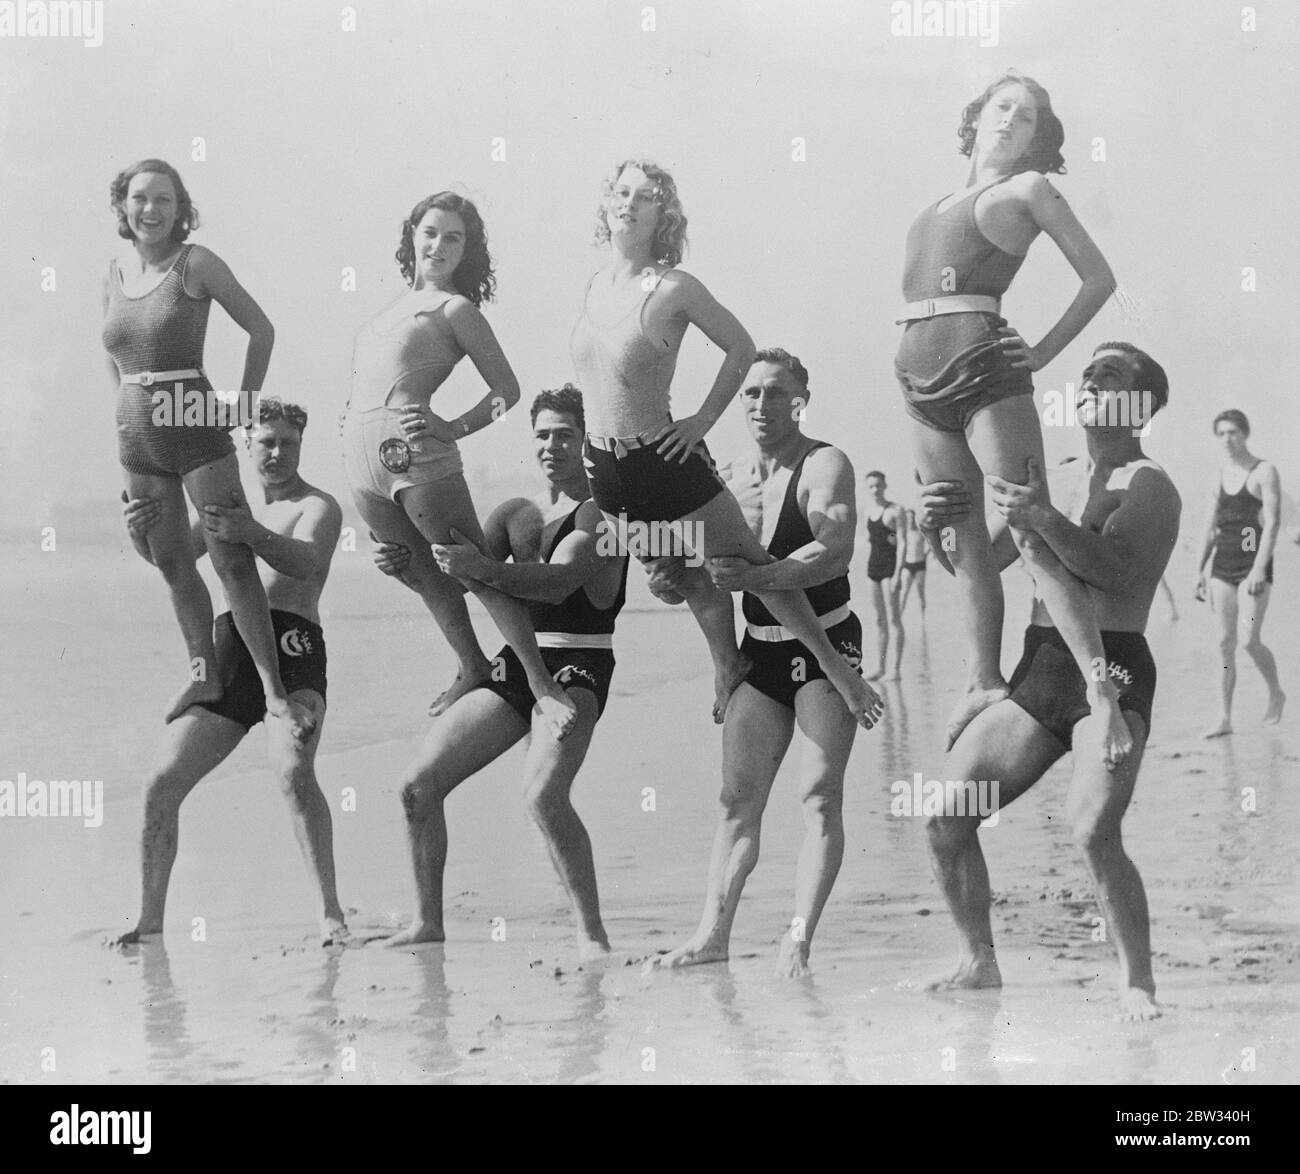 Prepararsi ai Giochi Olimpici al sole californiano . Atleti uomini e donne che si preparano ai Giochi Olimpici quest'estate , sulla spiaggia di Santa Monica , California , una meta preferita dagli atleti olimpici . 16 aprile 1932 Foto Stock